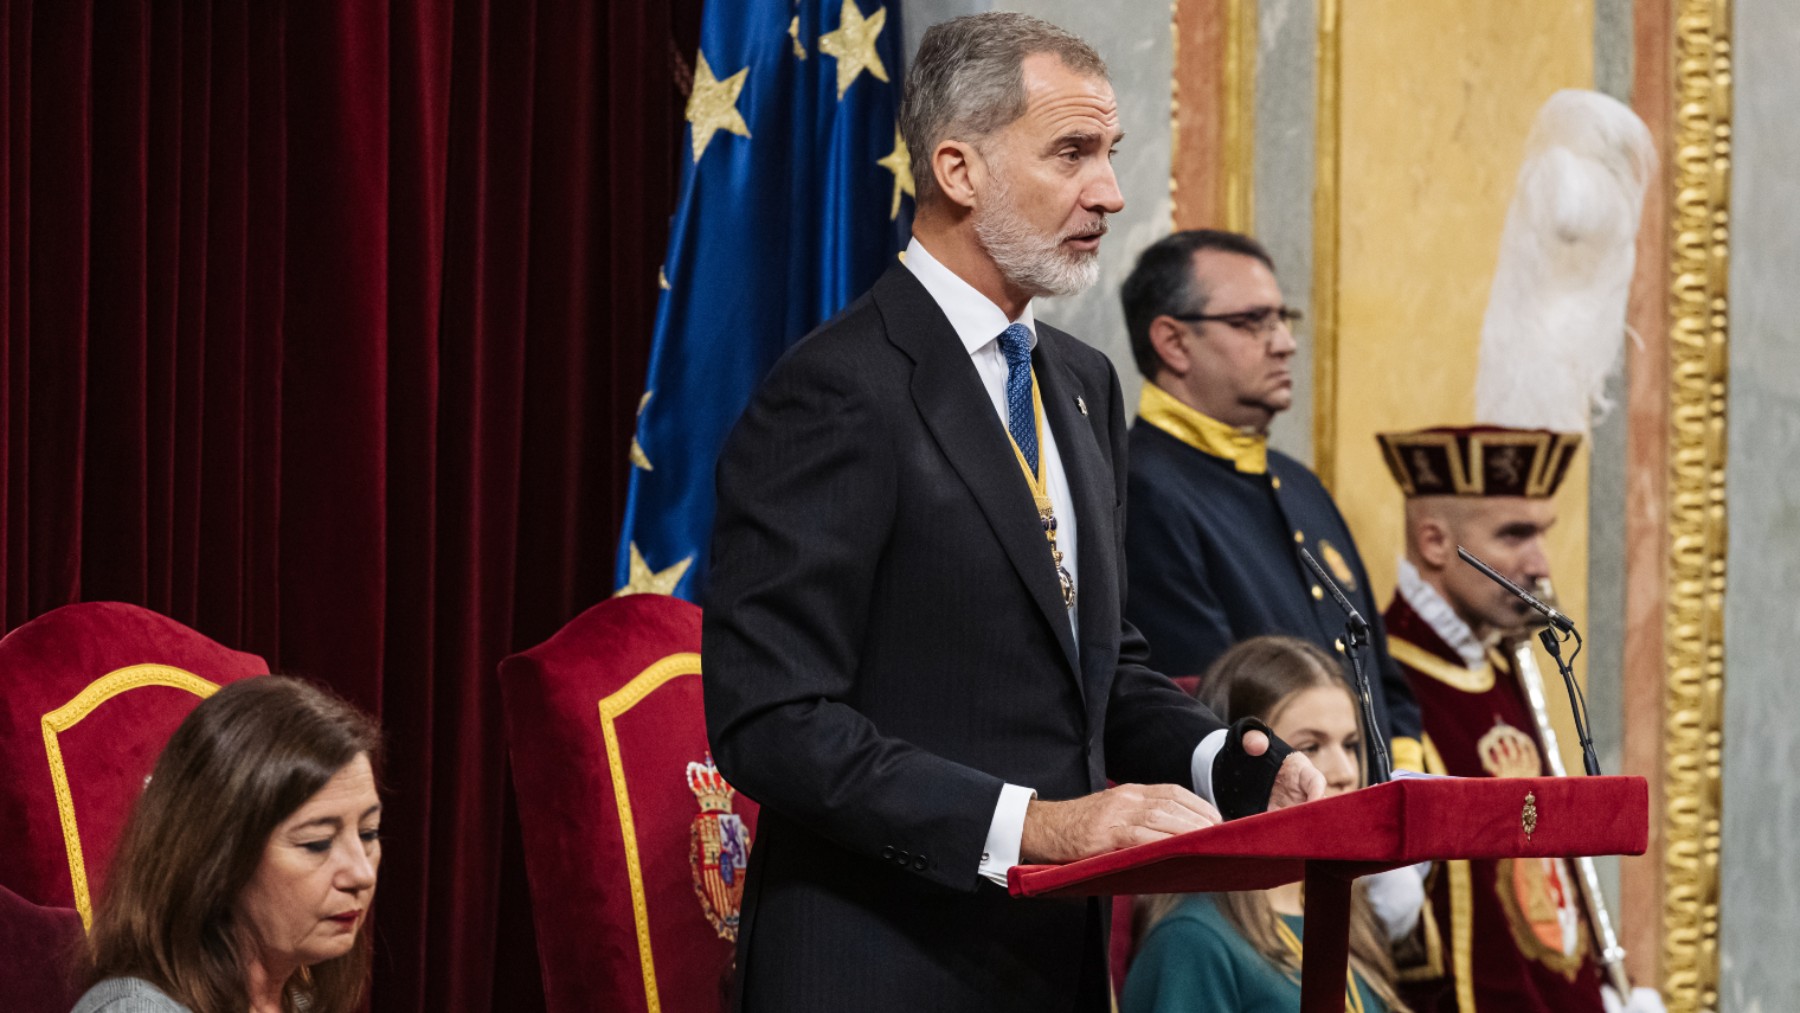 El Rey Felipe VI en su discurso en el Congreso de los Diputados (Foto: Ep)